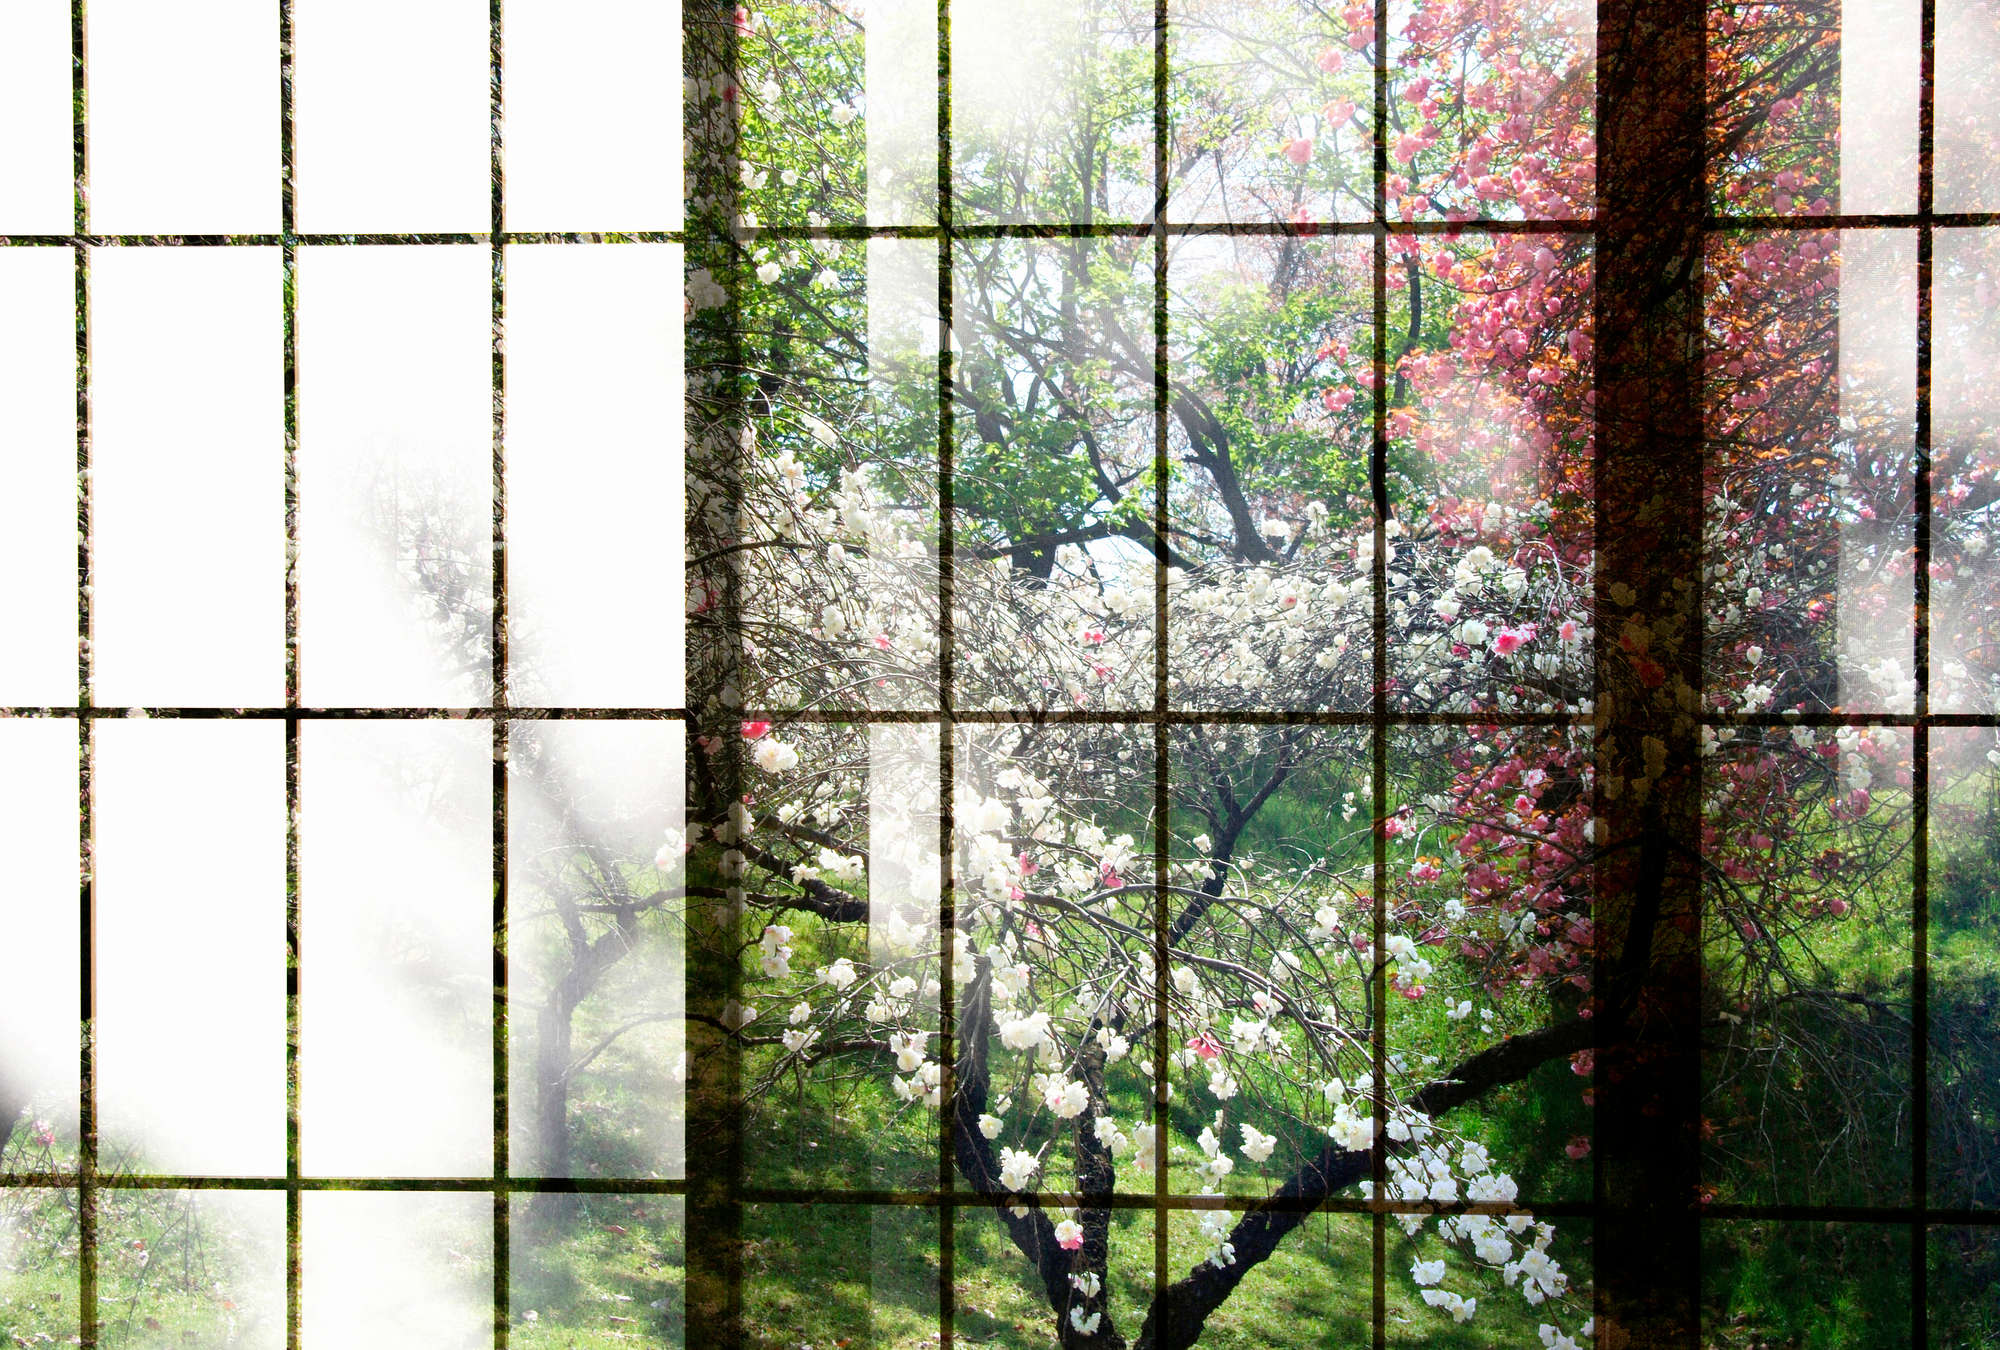             Orchard 2 - Photo wallpaper, Window with garden view - Green, Pink | Matt smooth fleece
        